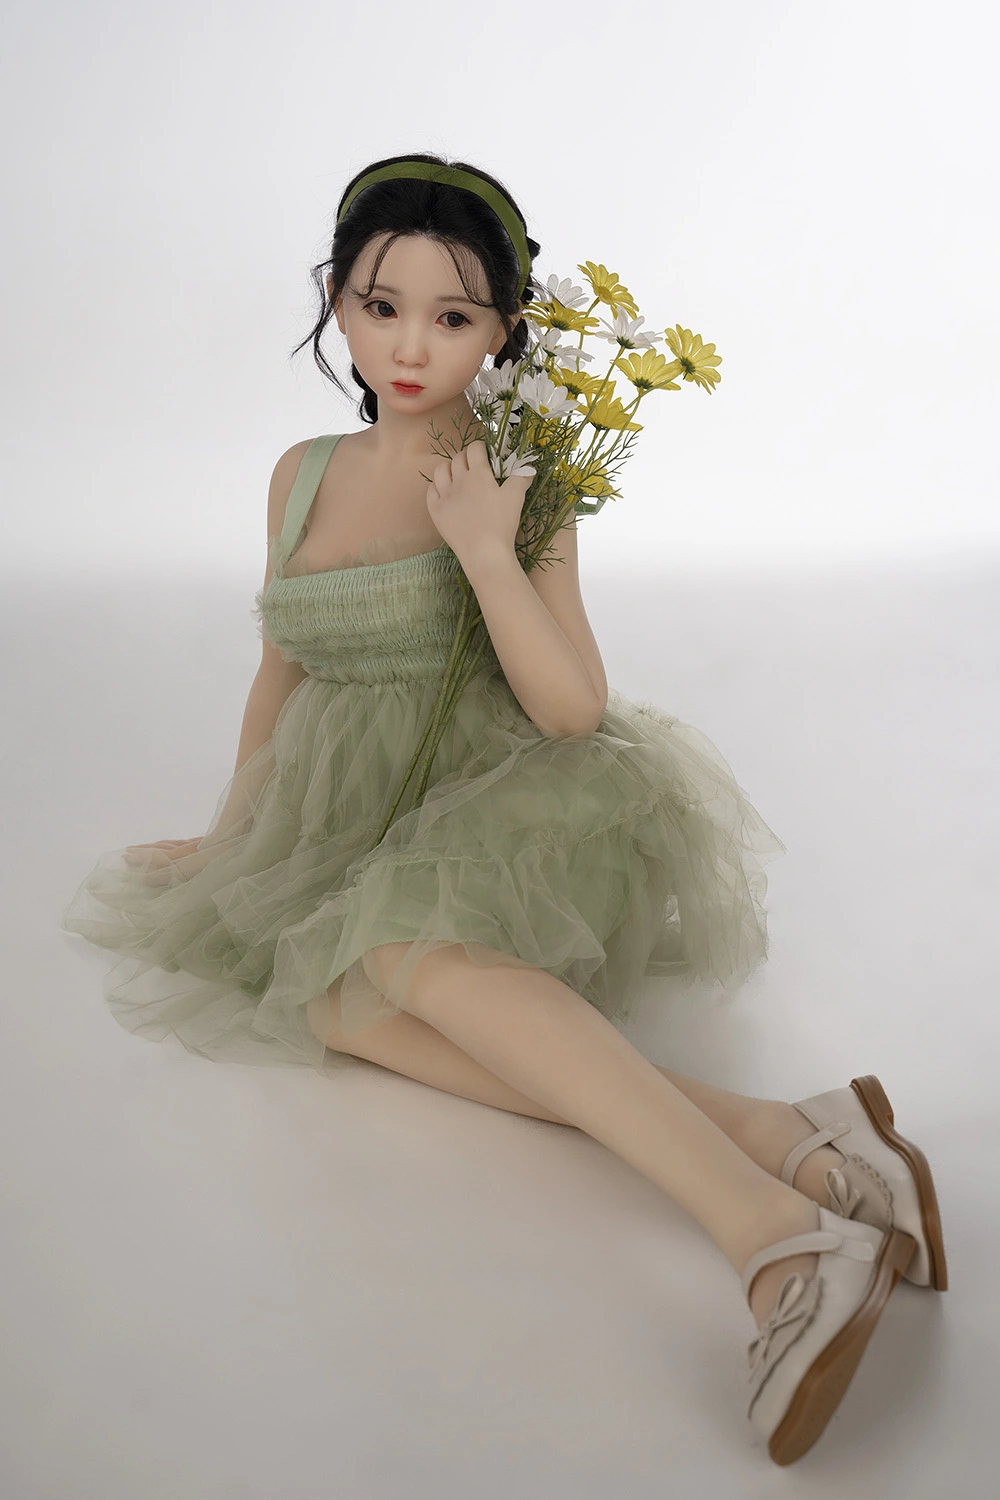  loli erotic doll wearing light green skirt